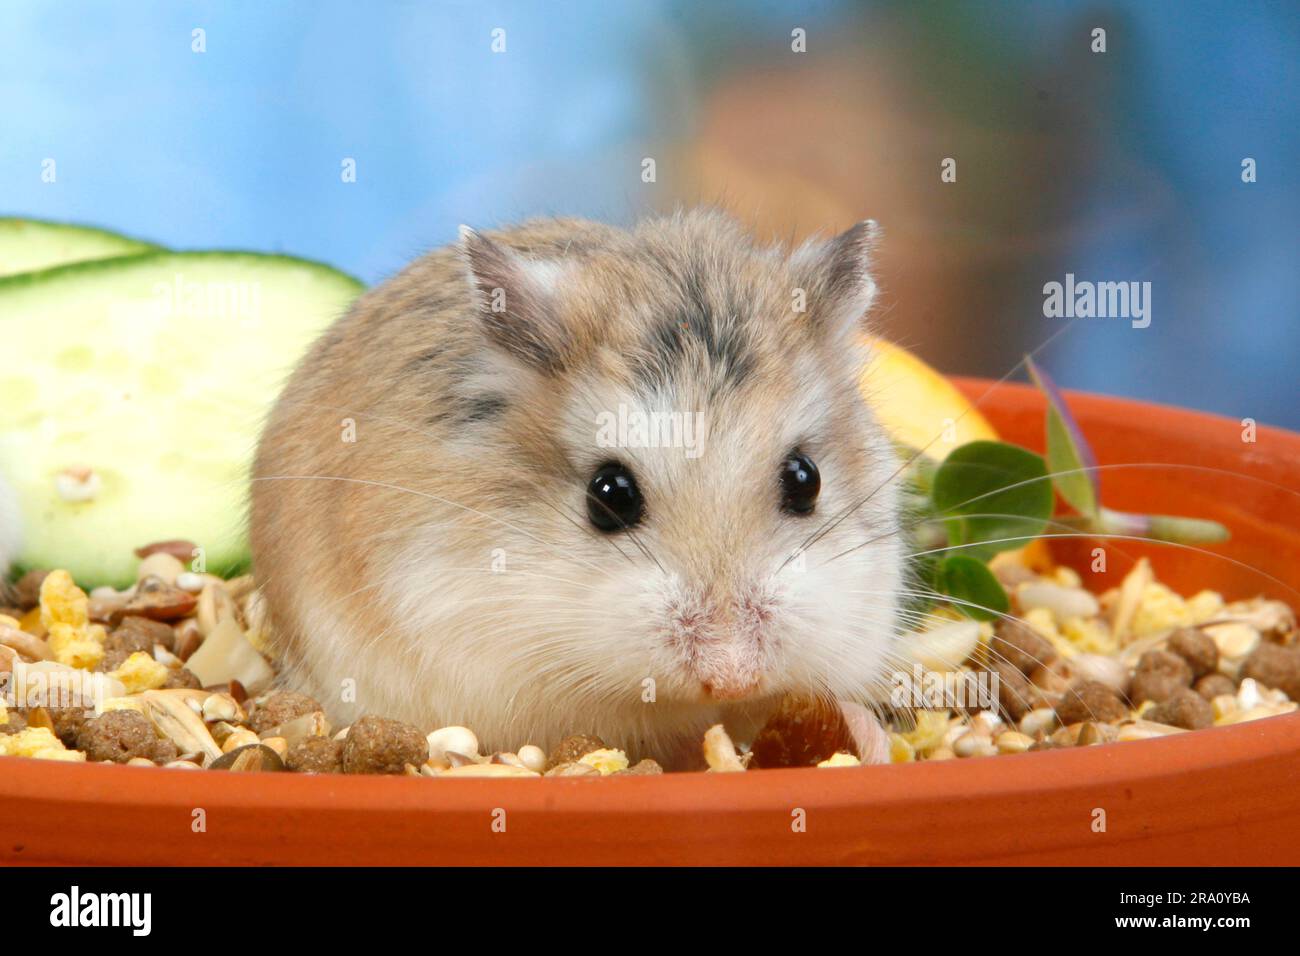 Roborovski Hamster (Phodopus roborovskii) in feeding bowl Stock Photo